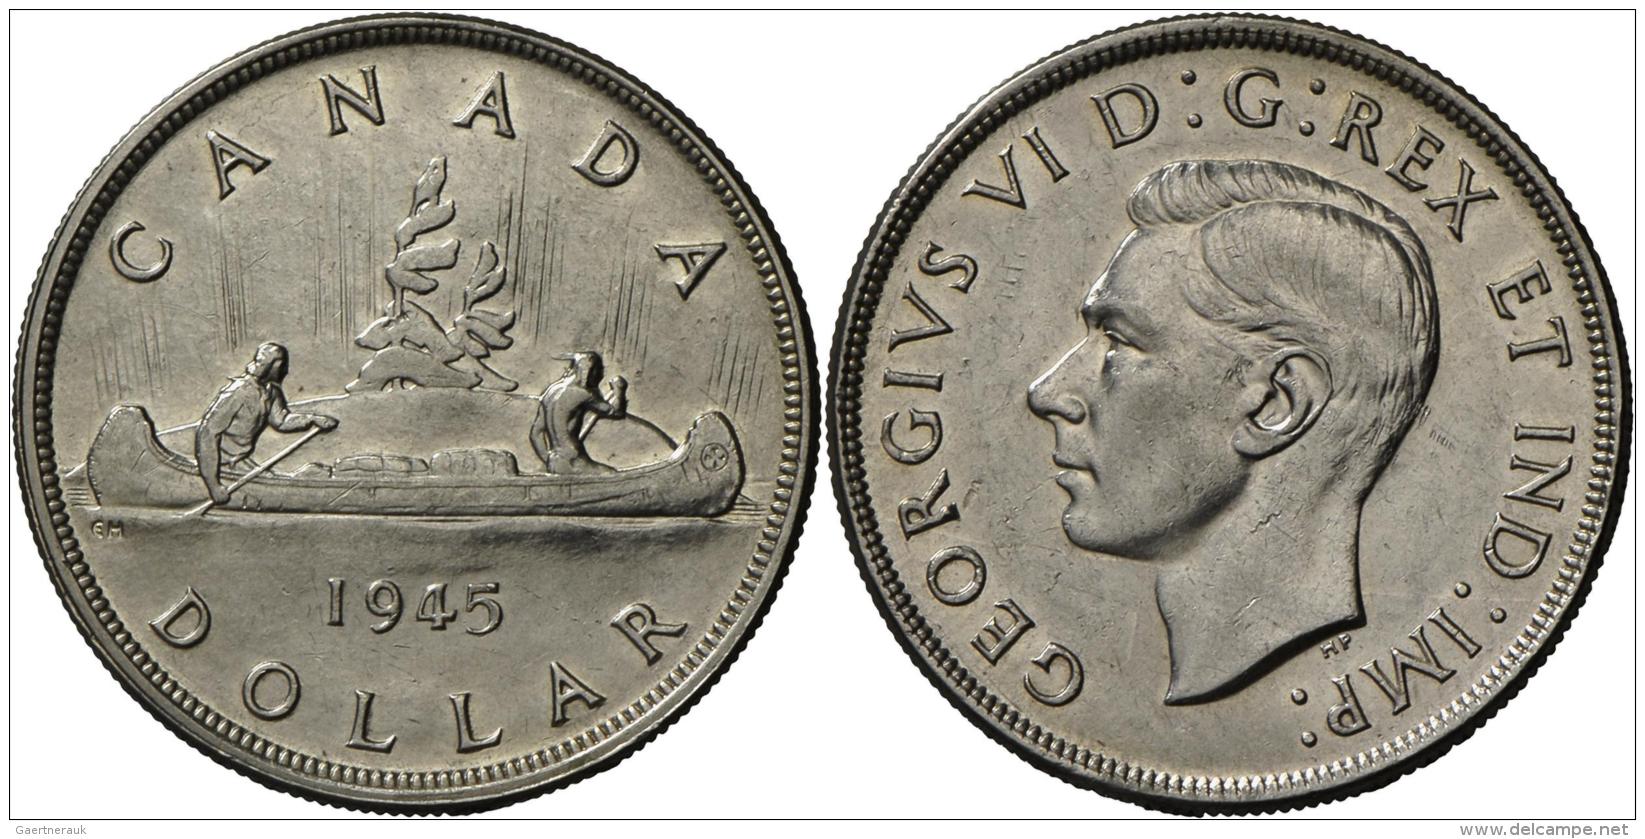 Kanada: 1 Dollar 1945 Kanu, KM #37, Feine Kratzer, Sehr Sch&ouml;n-vorz&uuml;glich. - Canada